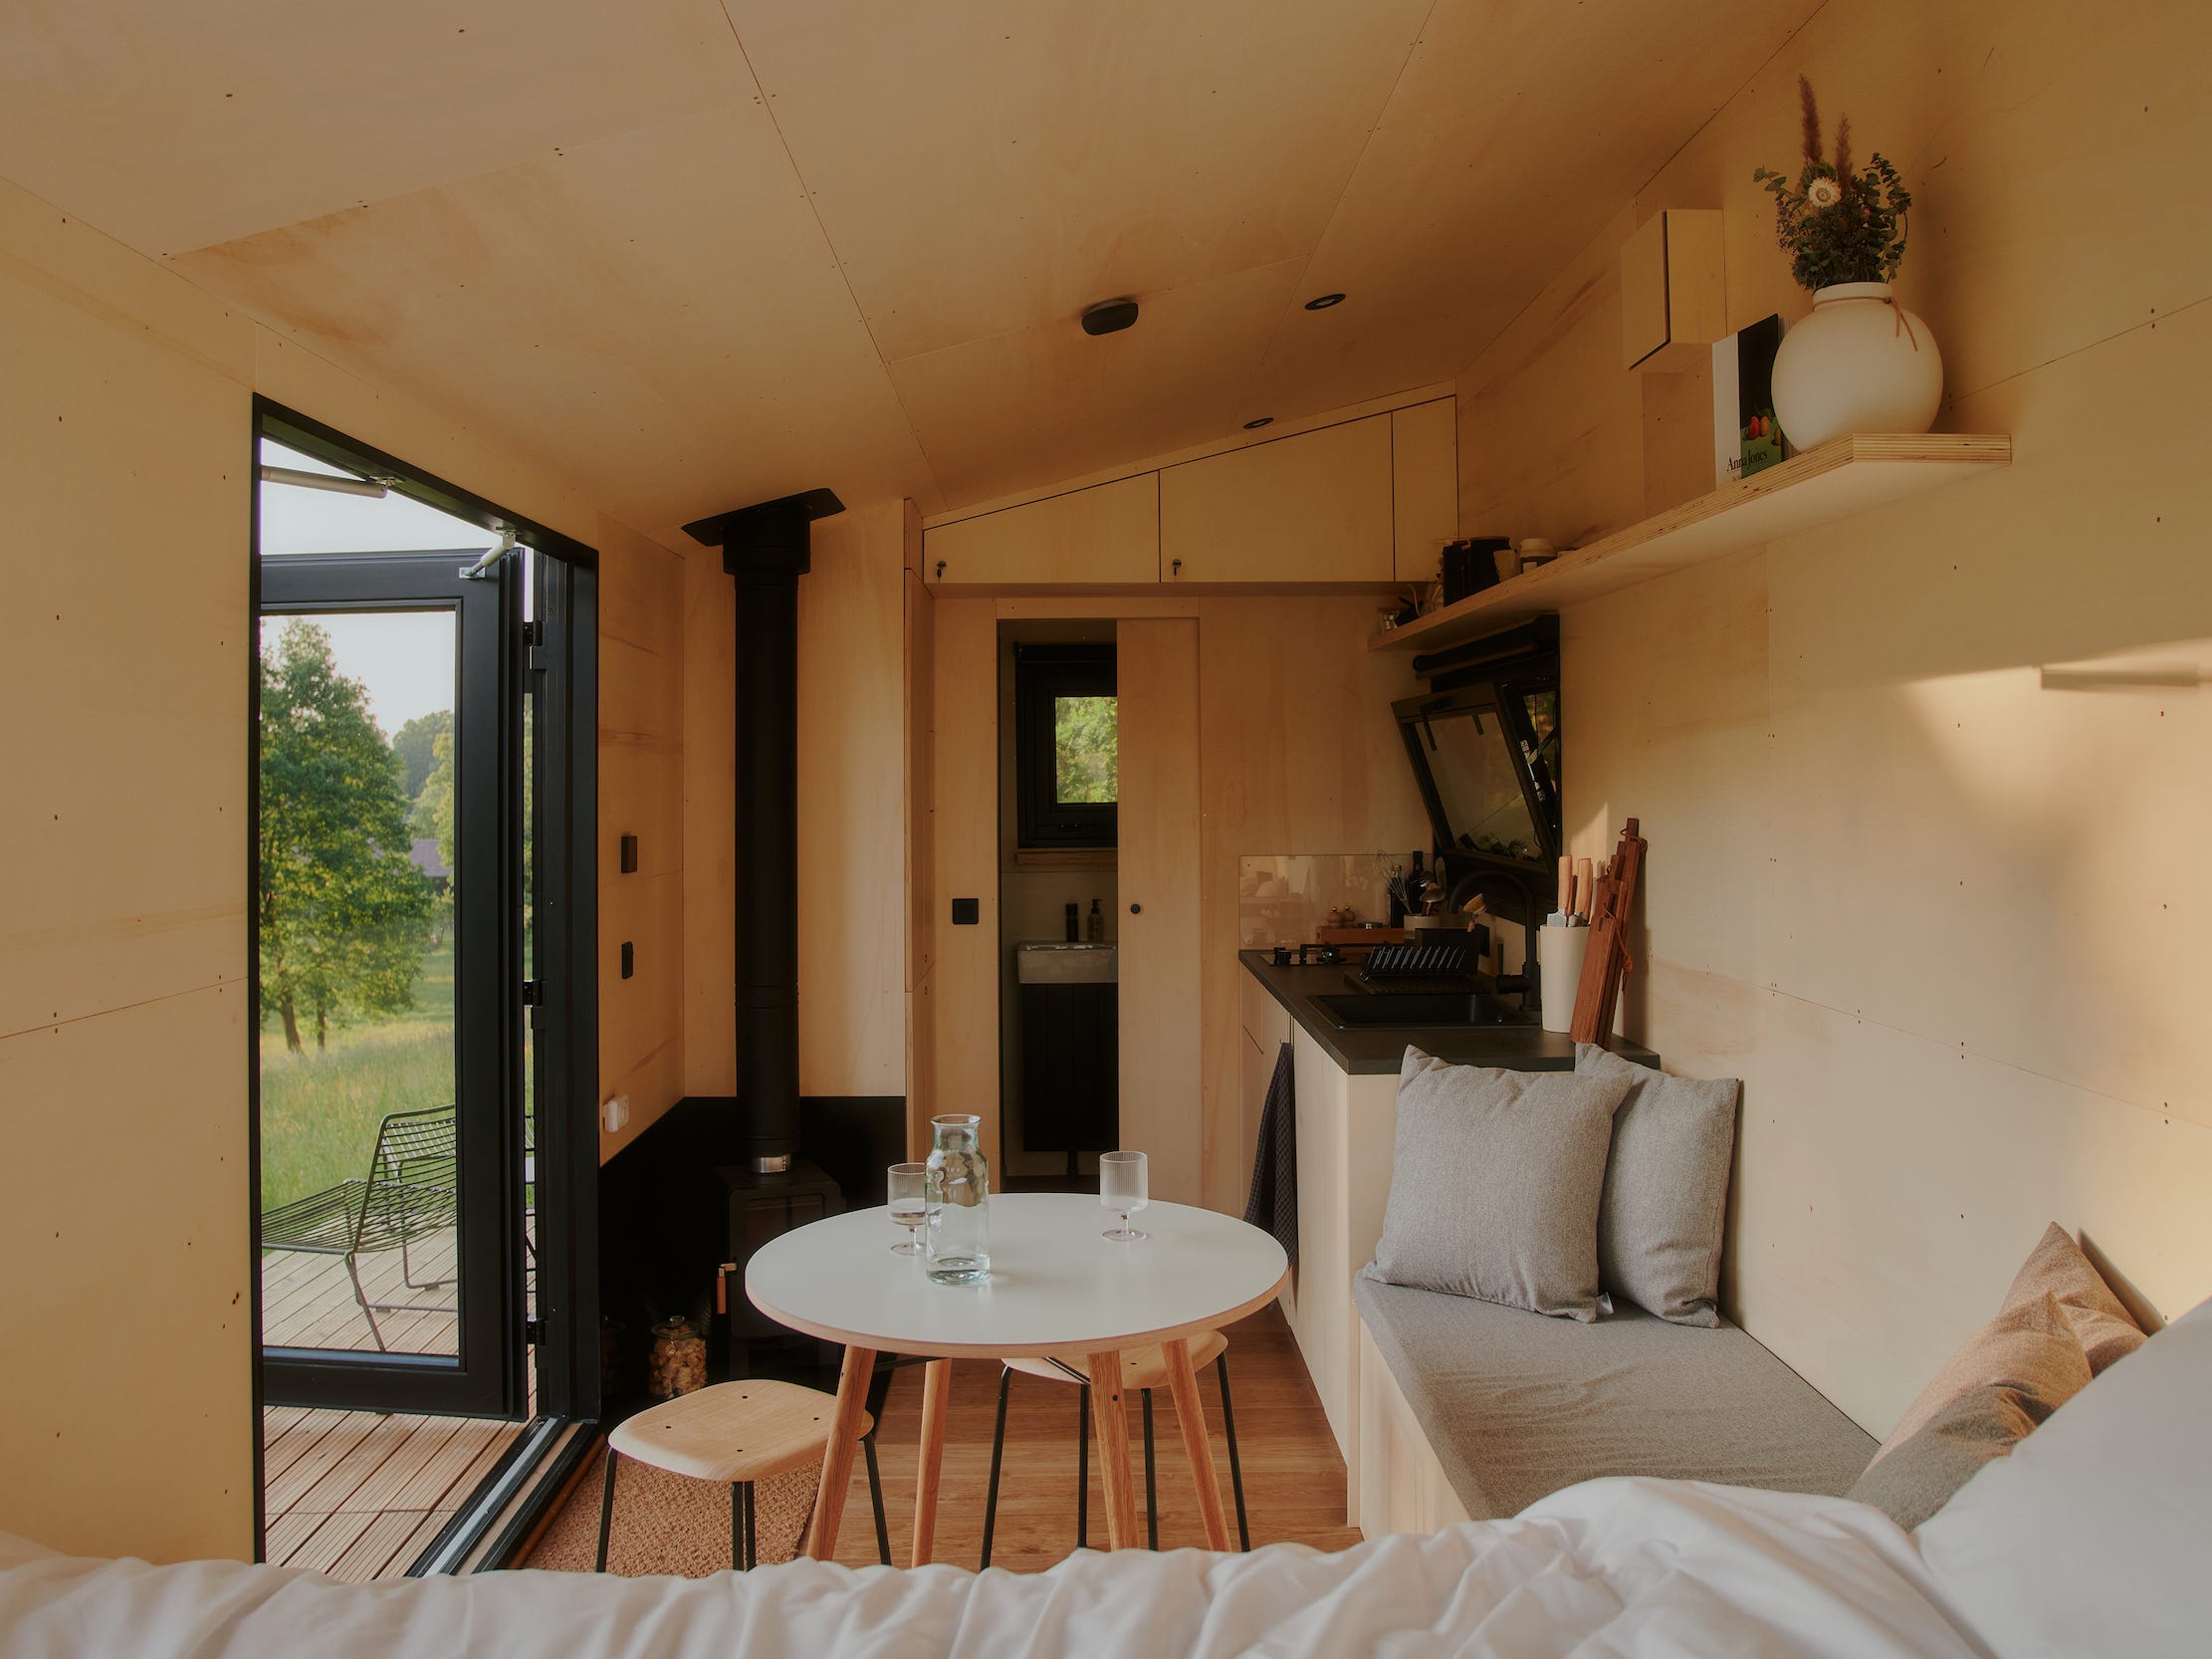 Een kijkje in een Raus-hut met een bed, eettafel, keuken en ramen met uitzicht op de natuur.